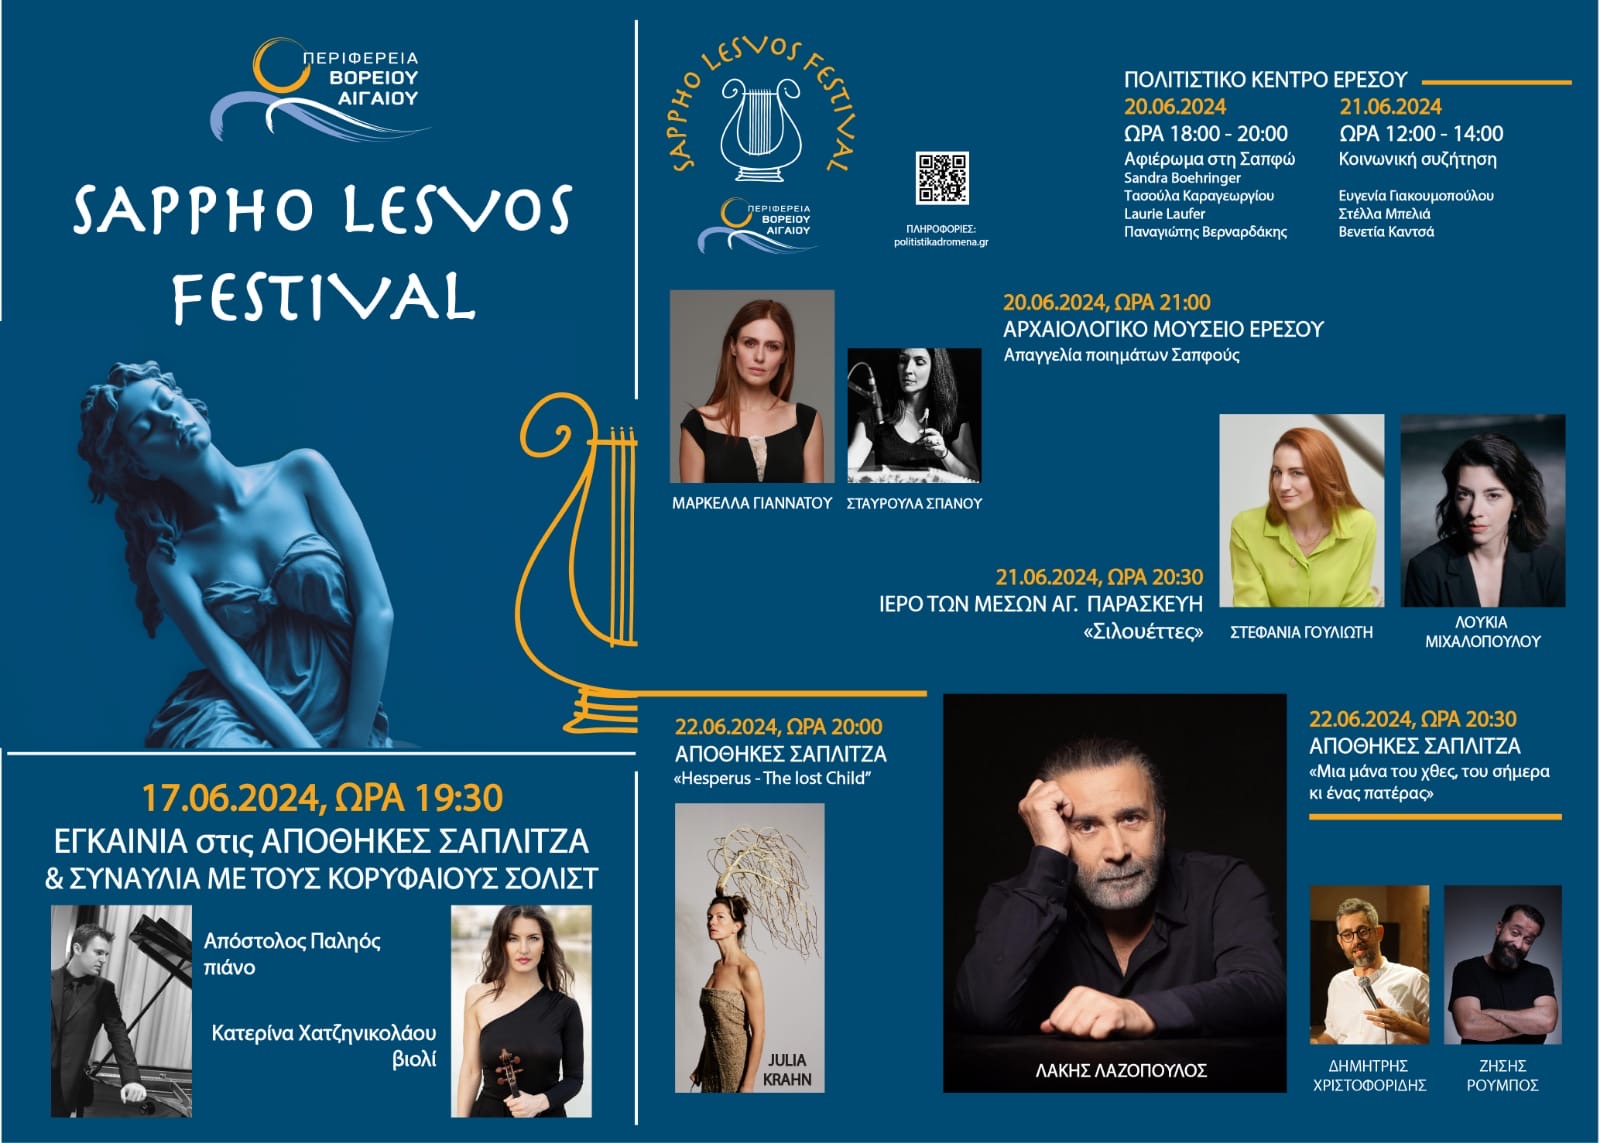 Sappho Lesvos Festival: Η νέα πολιτιστική δράση της Περιφέρειας Βορείου Αιγαίου